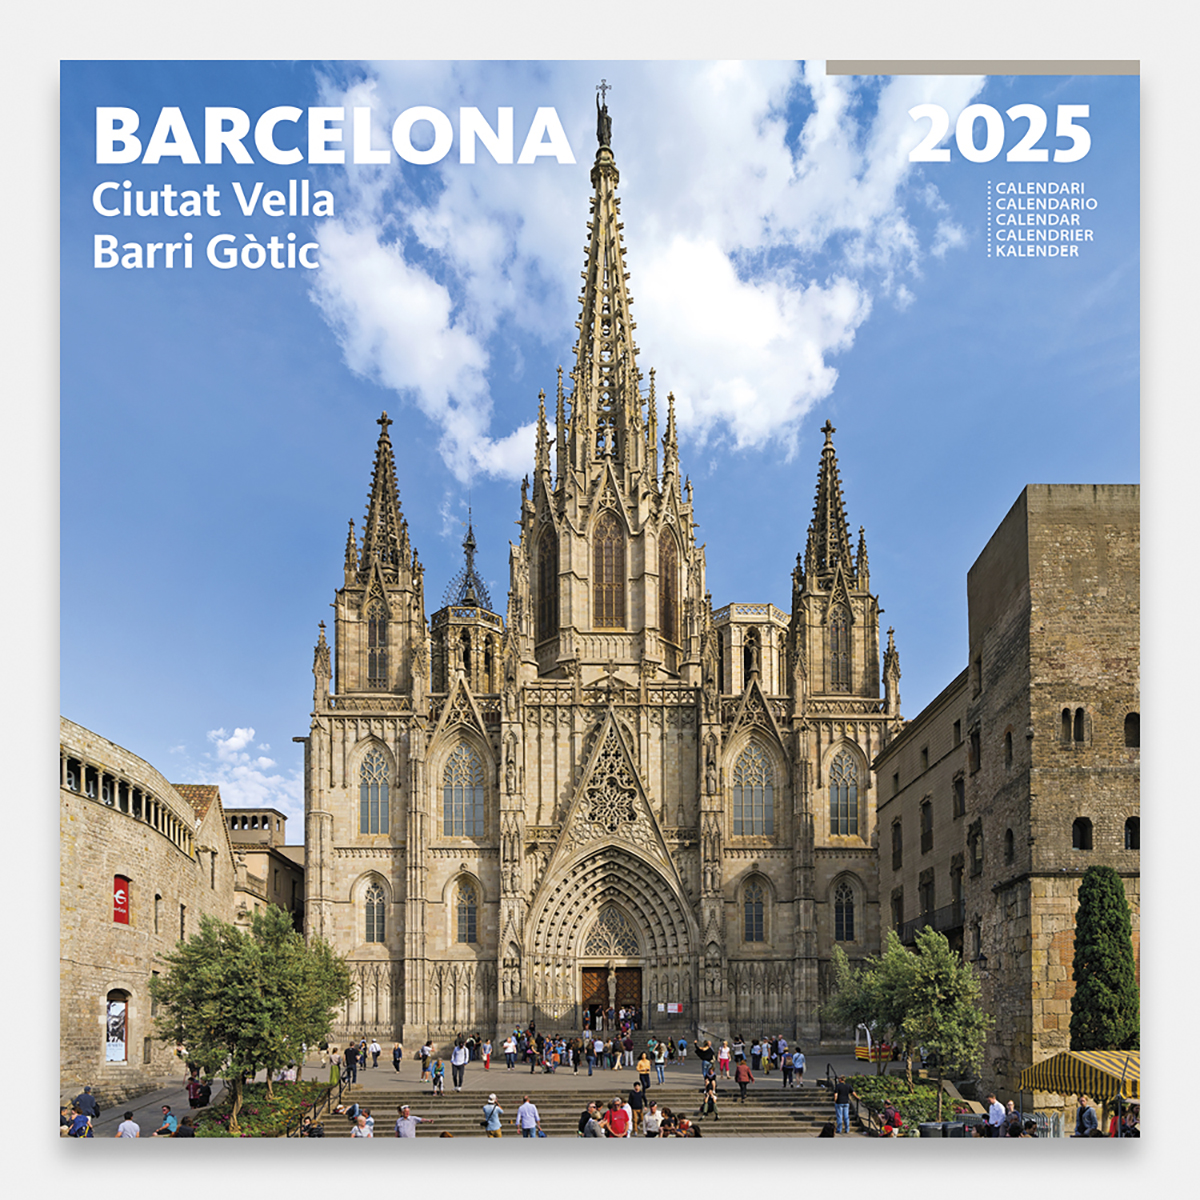 Calendrier 2025 Barcelone. Ciutat Vella 25bg3 calendario pared 2025 barcelona